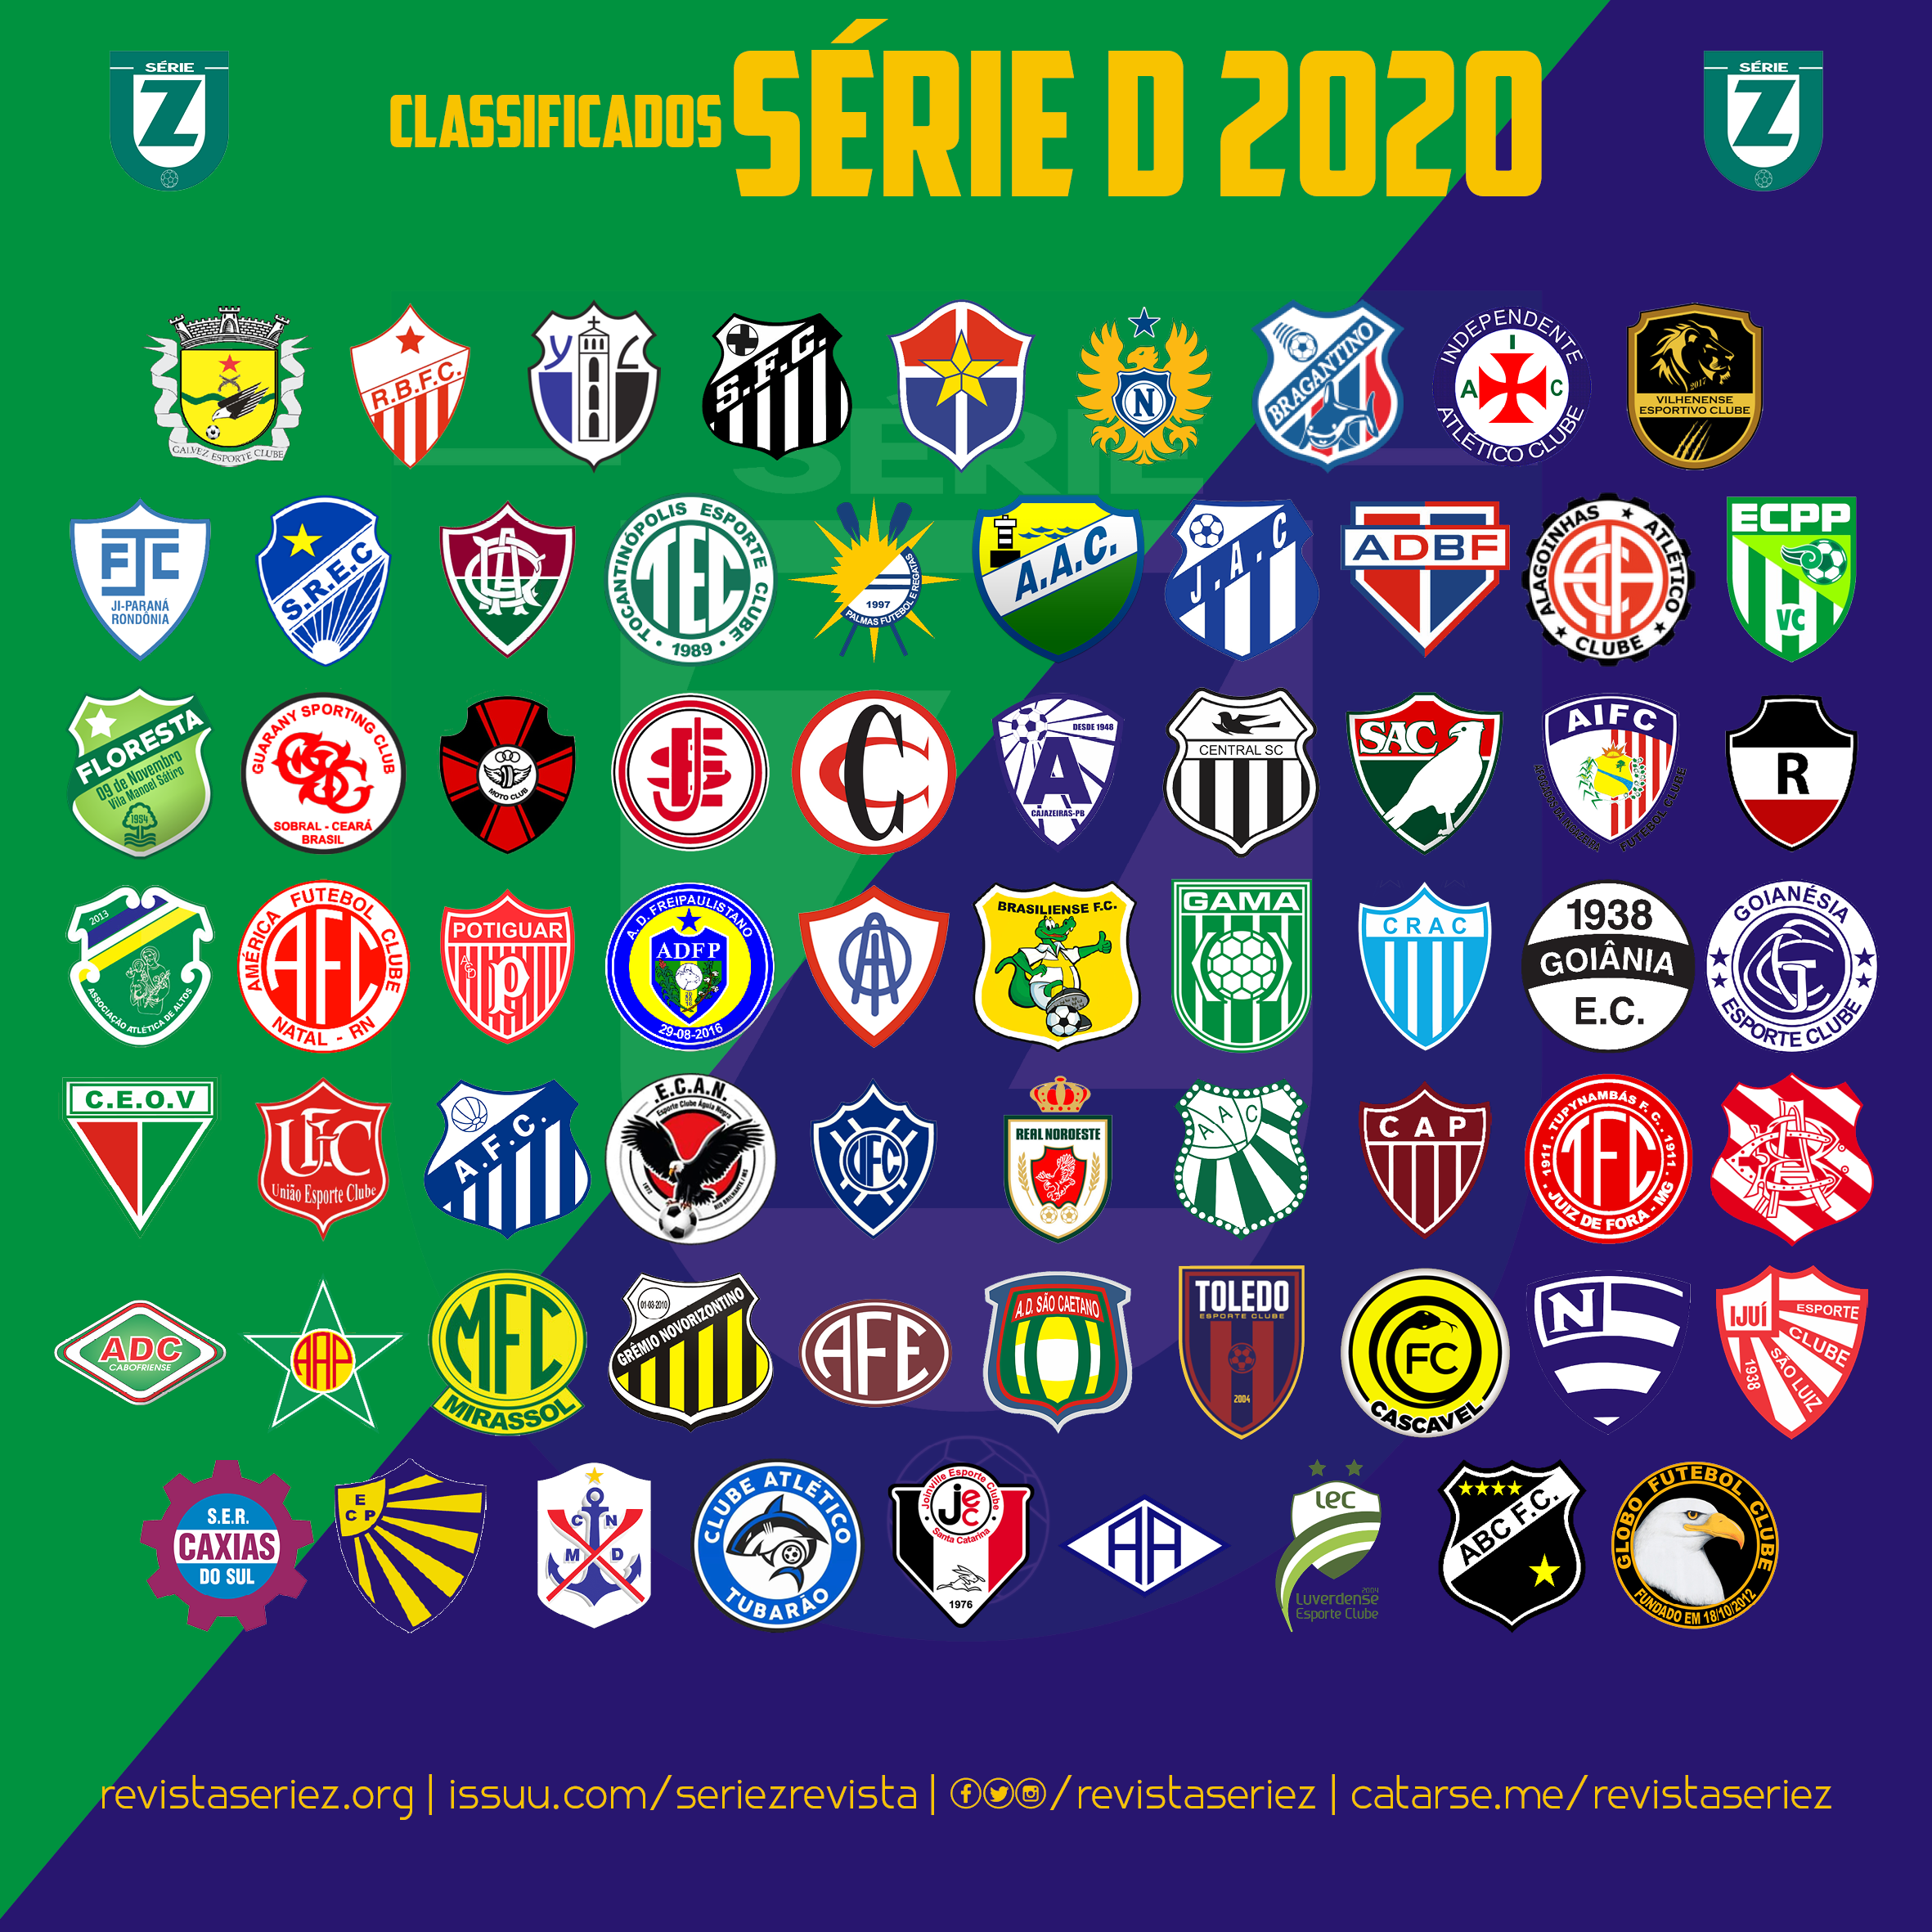 A linha do tempo de classificação à Série D 2020 – Revista SÉRIE Z